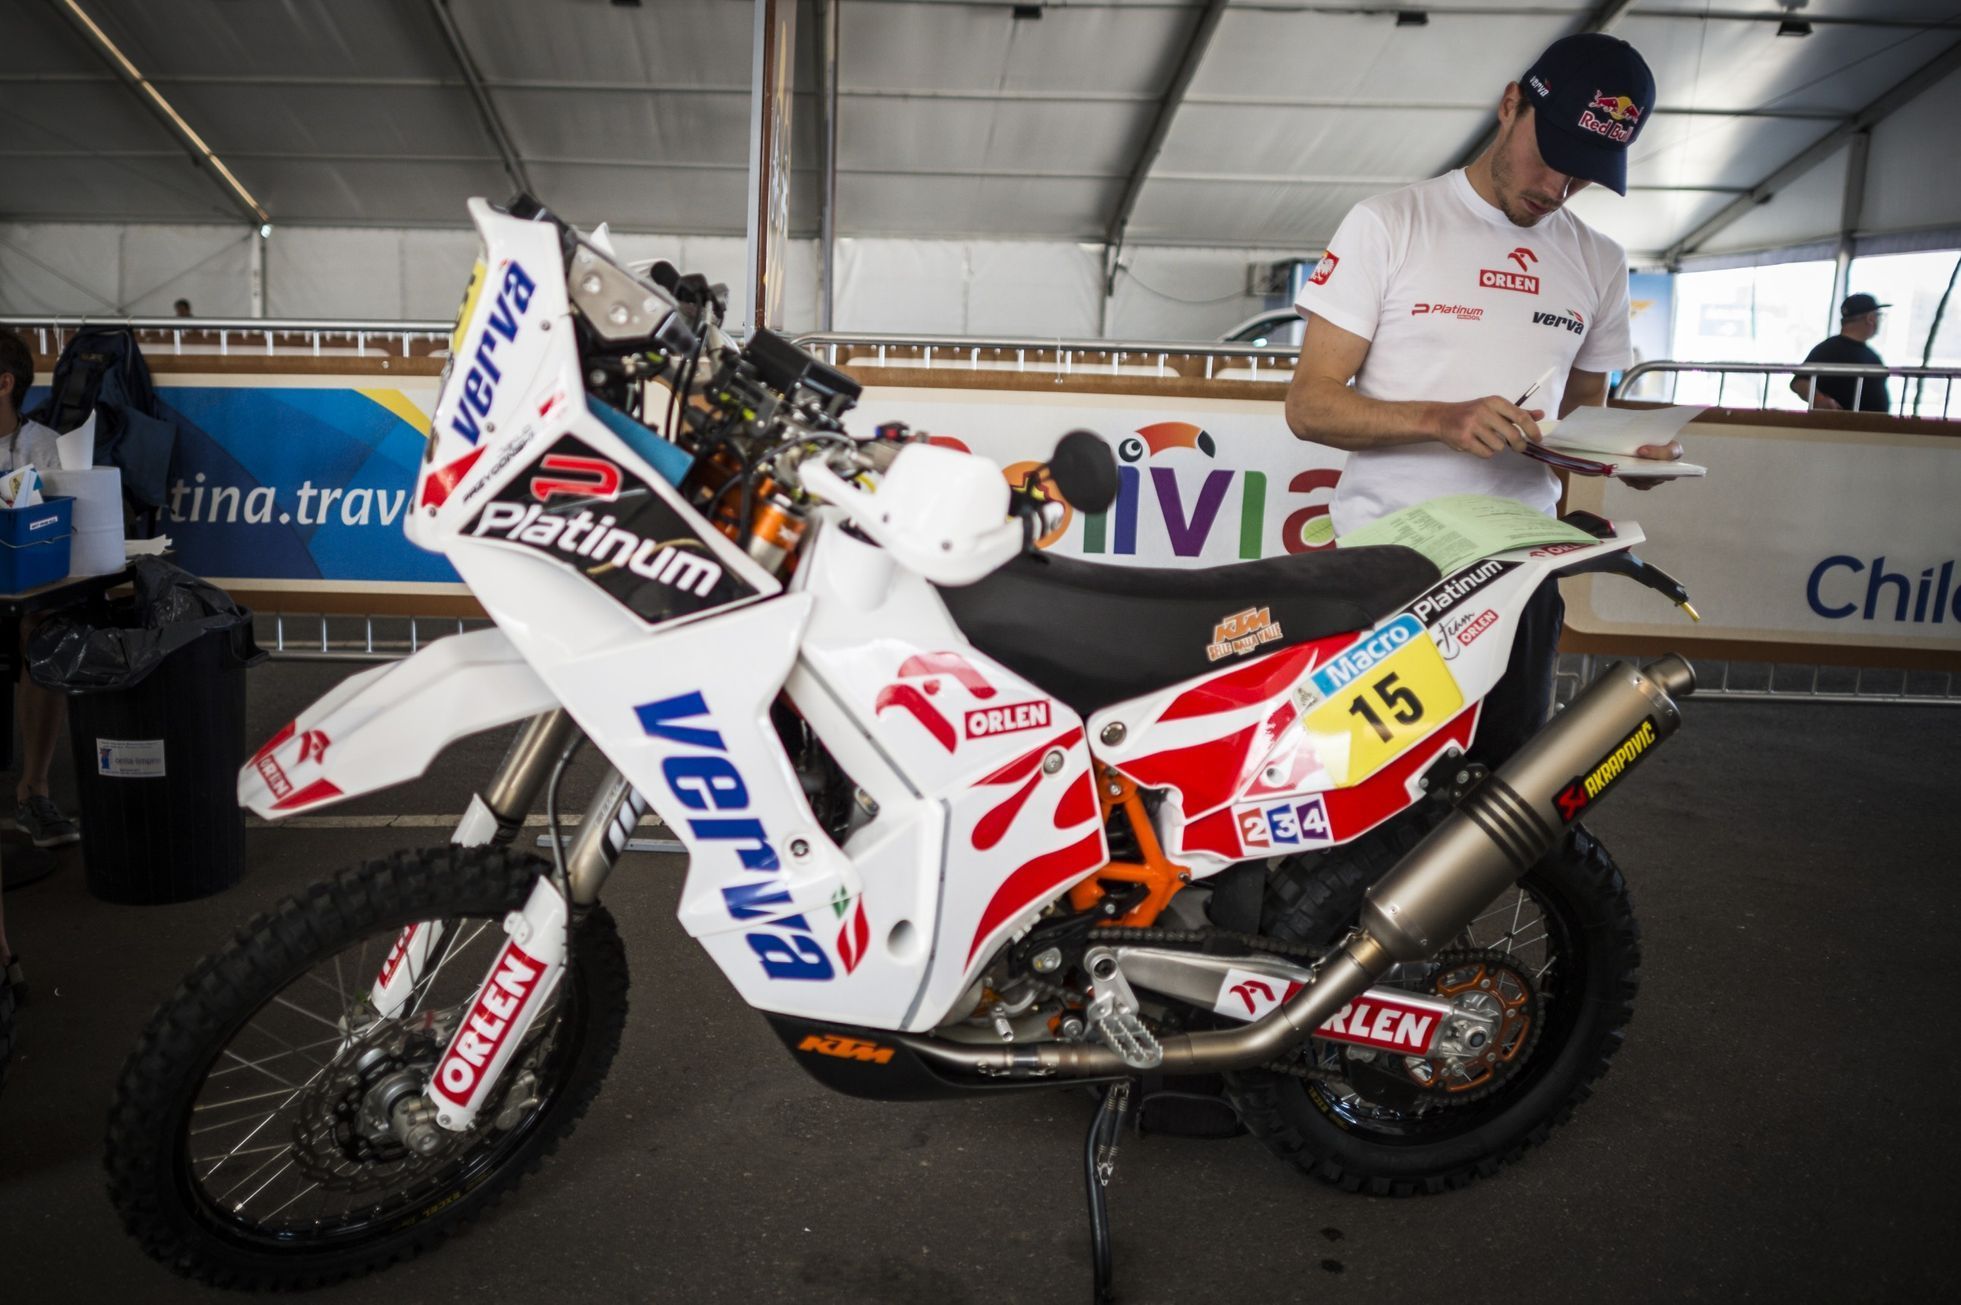 Dakar 2014: Jakub Przygonski, KTM